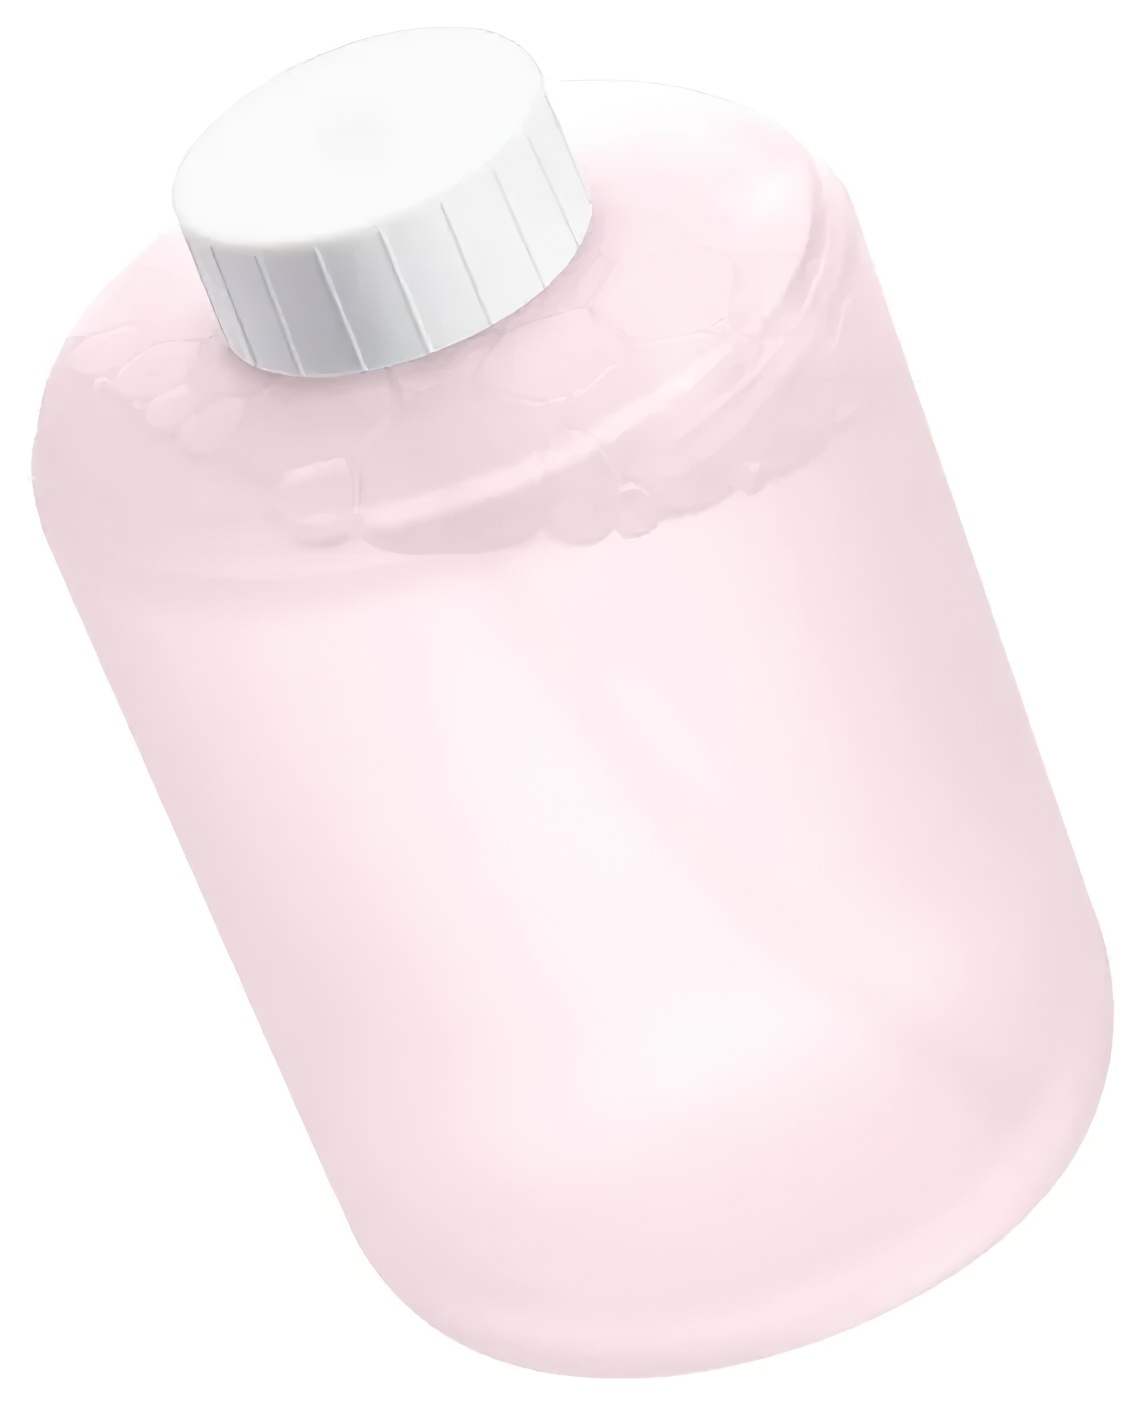 Сменный блок для дозатора жидкого мыла Xiaomi Mi Simpleway Foaming Hand Soap Pink (1шт) системный блок robotcomp анаконда 3 0 v2 plus pink